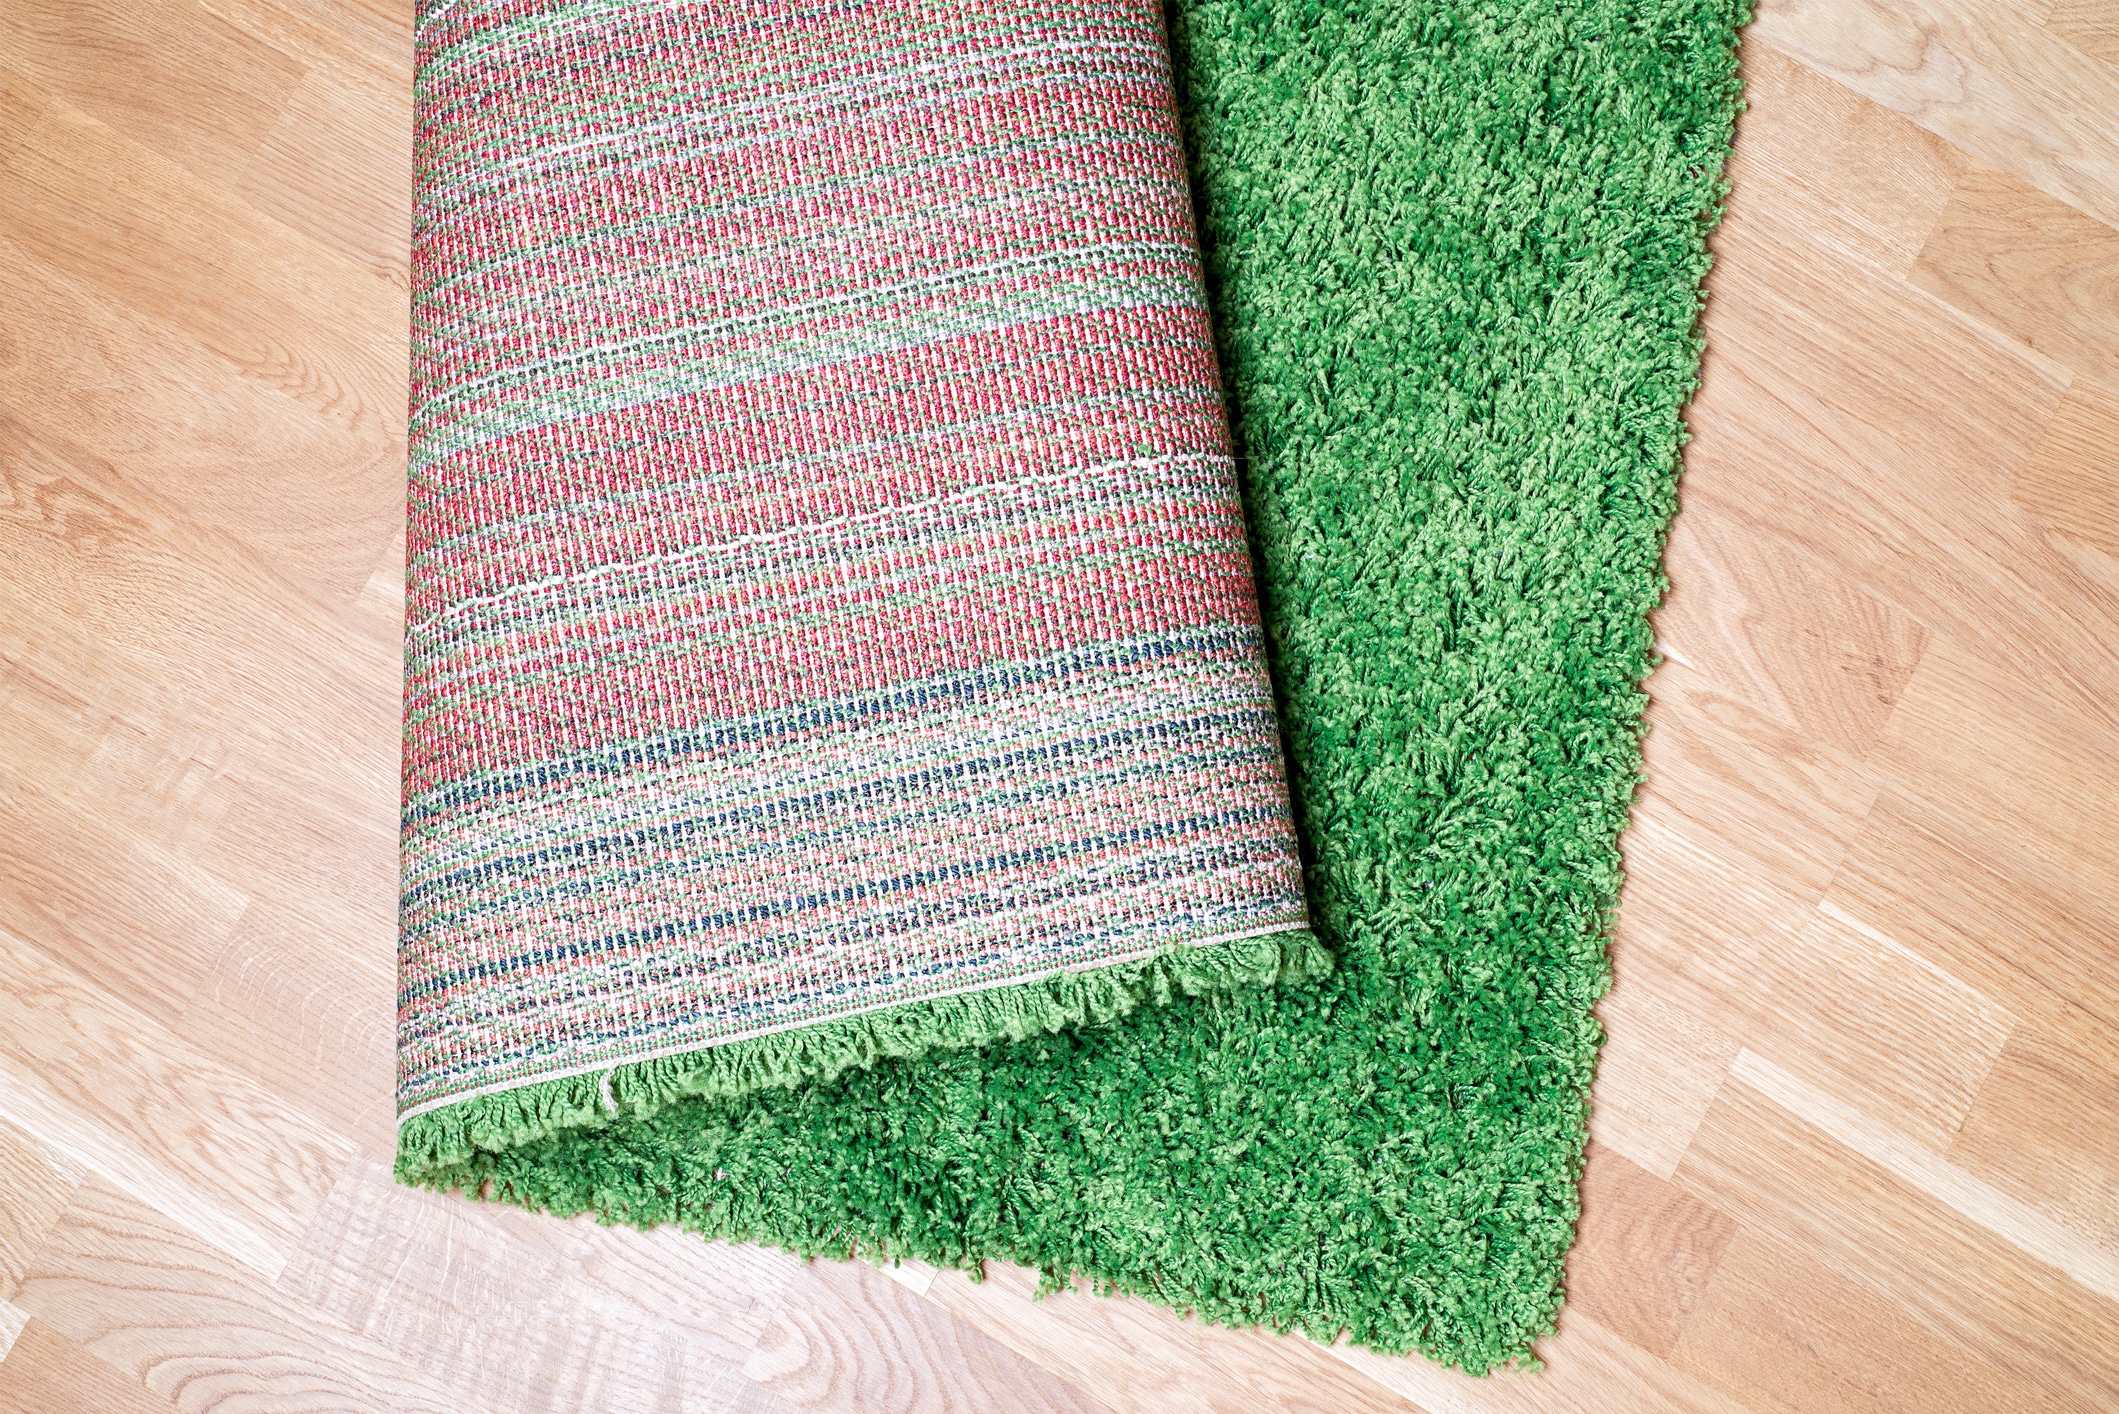 Instabind - Bond Products Inc  Diy carpet, Diy rug, Carpet remnants